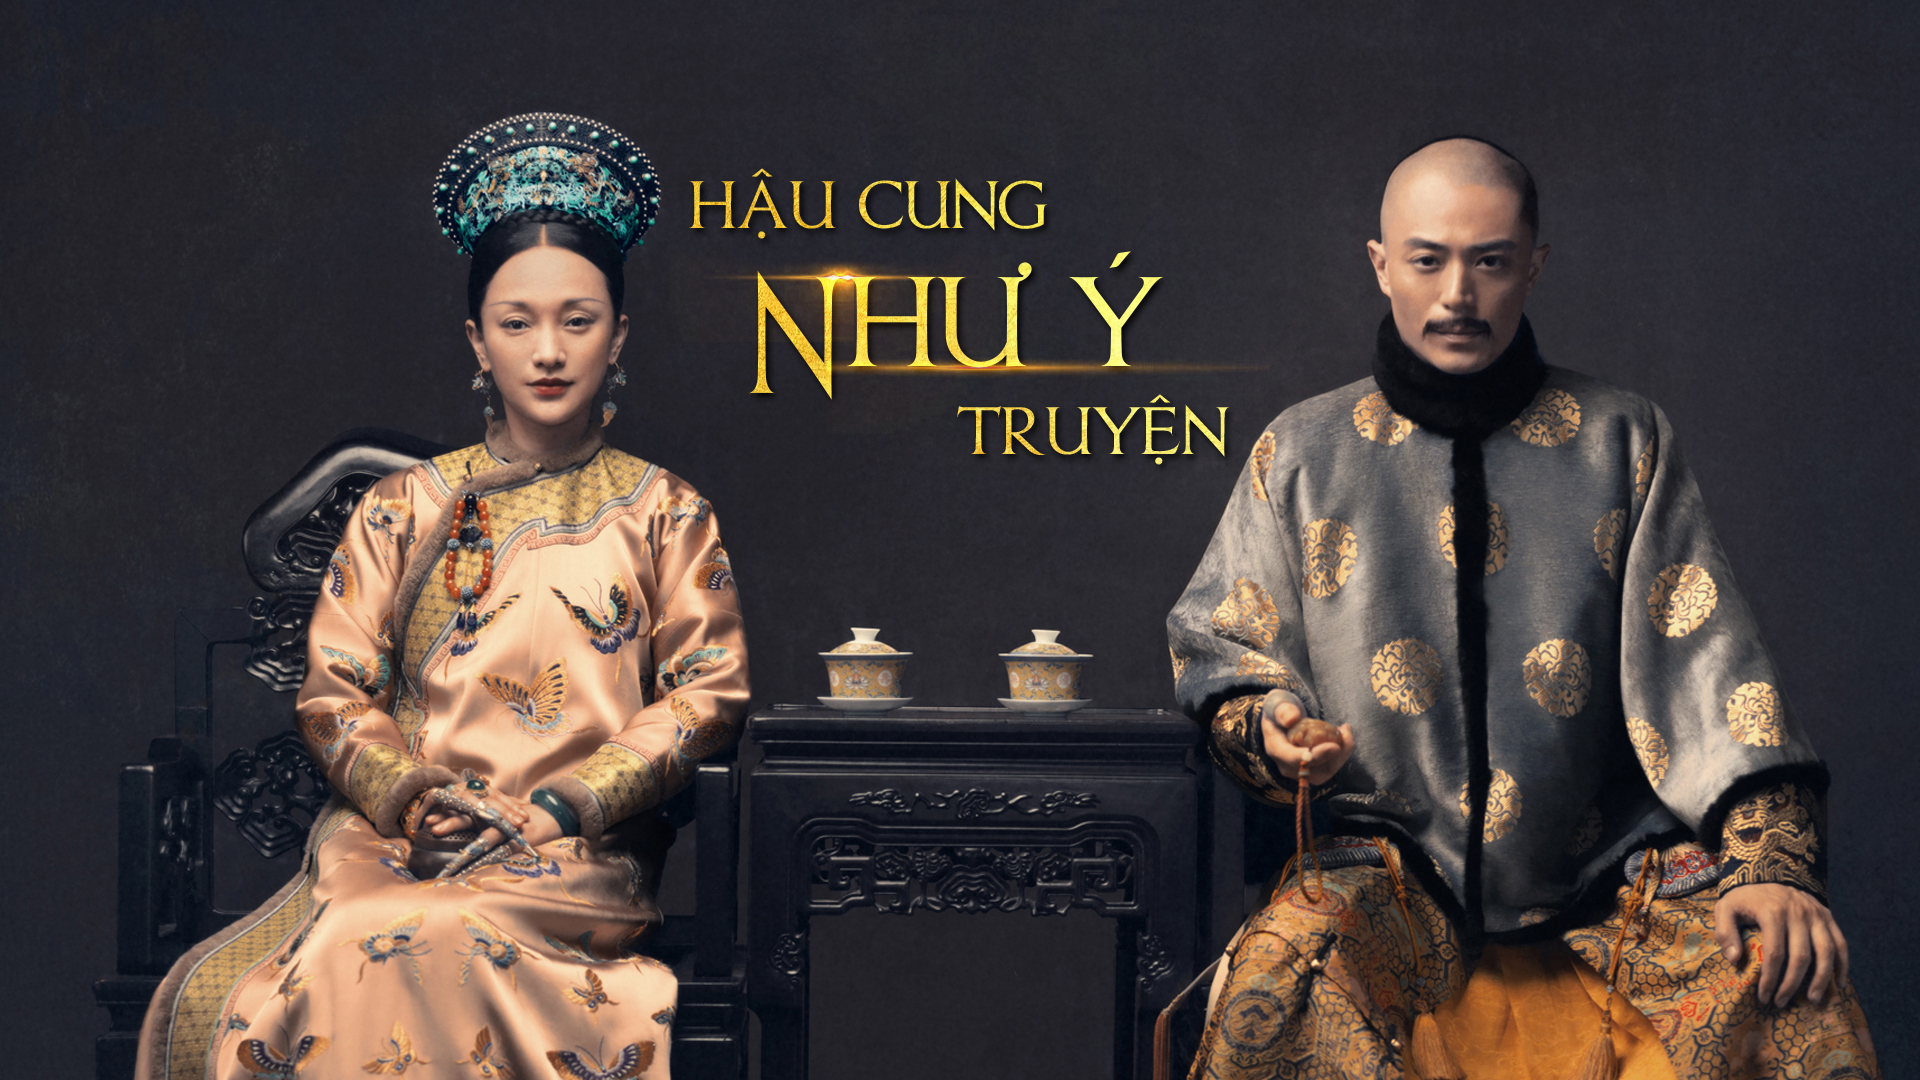 Hậu Cung Như Ý Truyện - Ruyi's Royal Love in the Palace